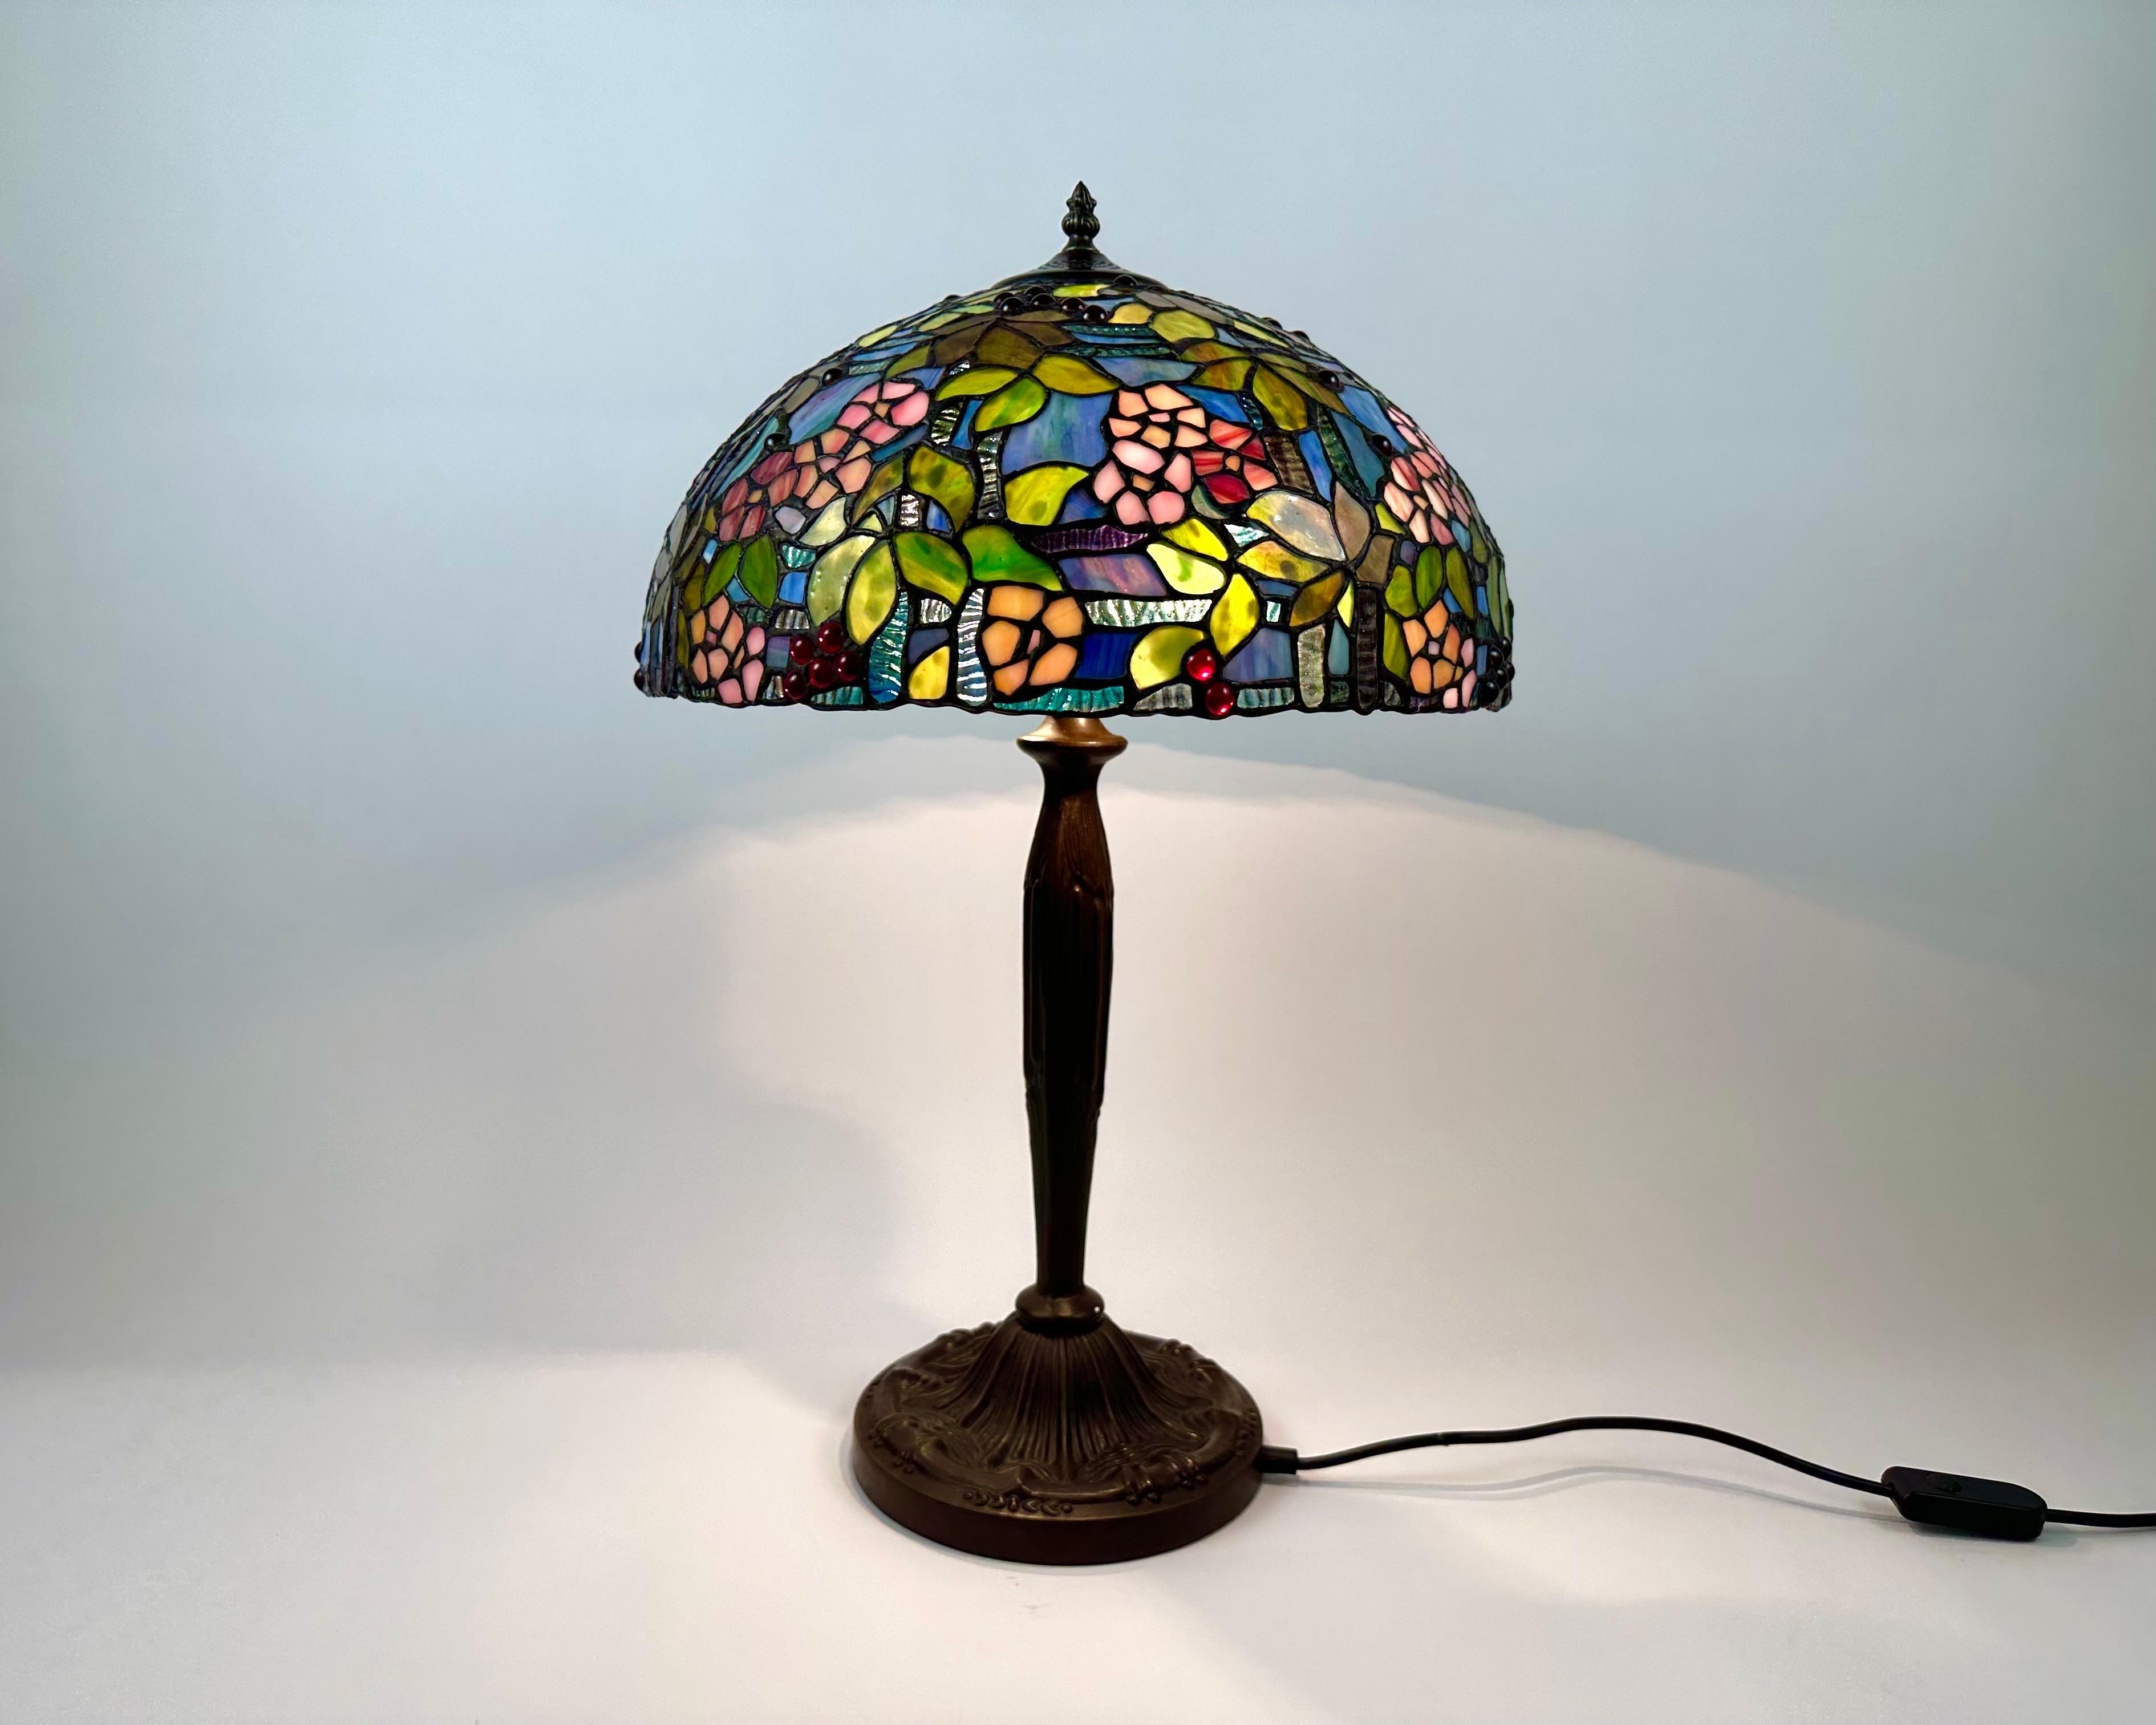 Diese prächtige, exklusive Tischlampe aus farbigem Glas wurde im klassischen Tiffany-Stil in Frankreich in den 1960er Jahren hergestellt.

Der Lampenschirm und der Sockel dieser Lampe haben ein einzigartiges Design. Der Sockel ist aus Bronze